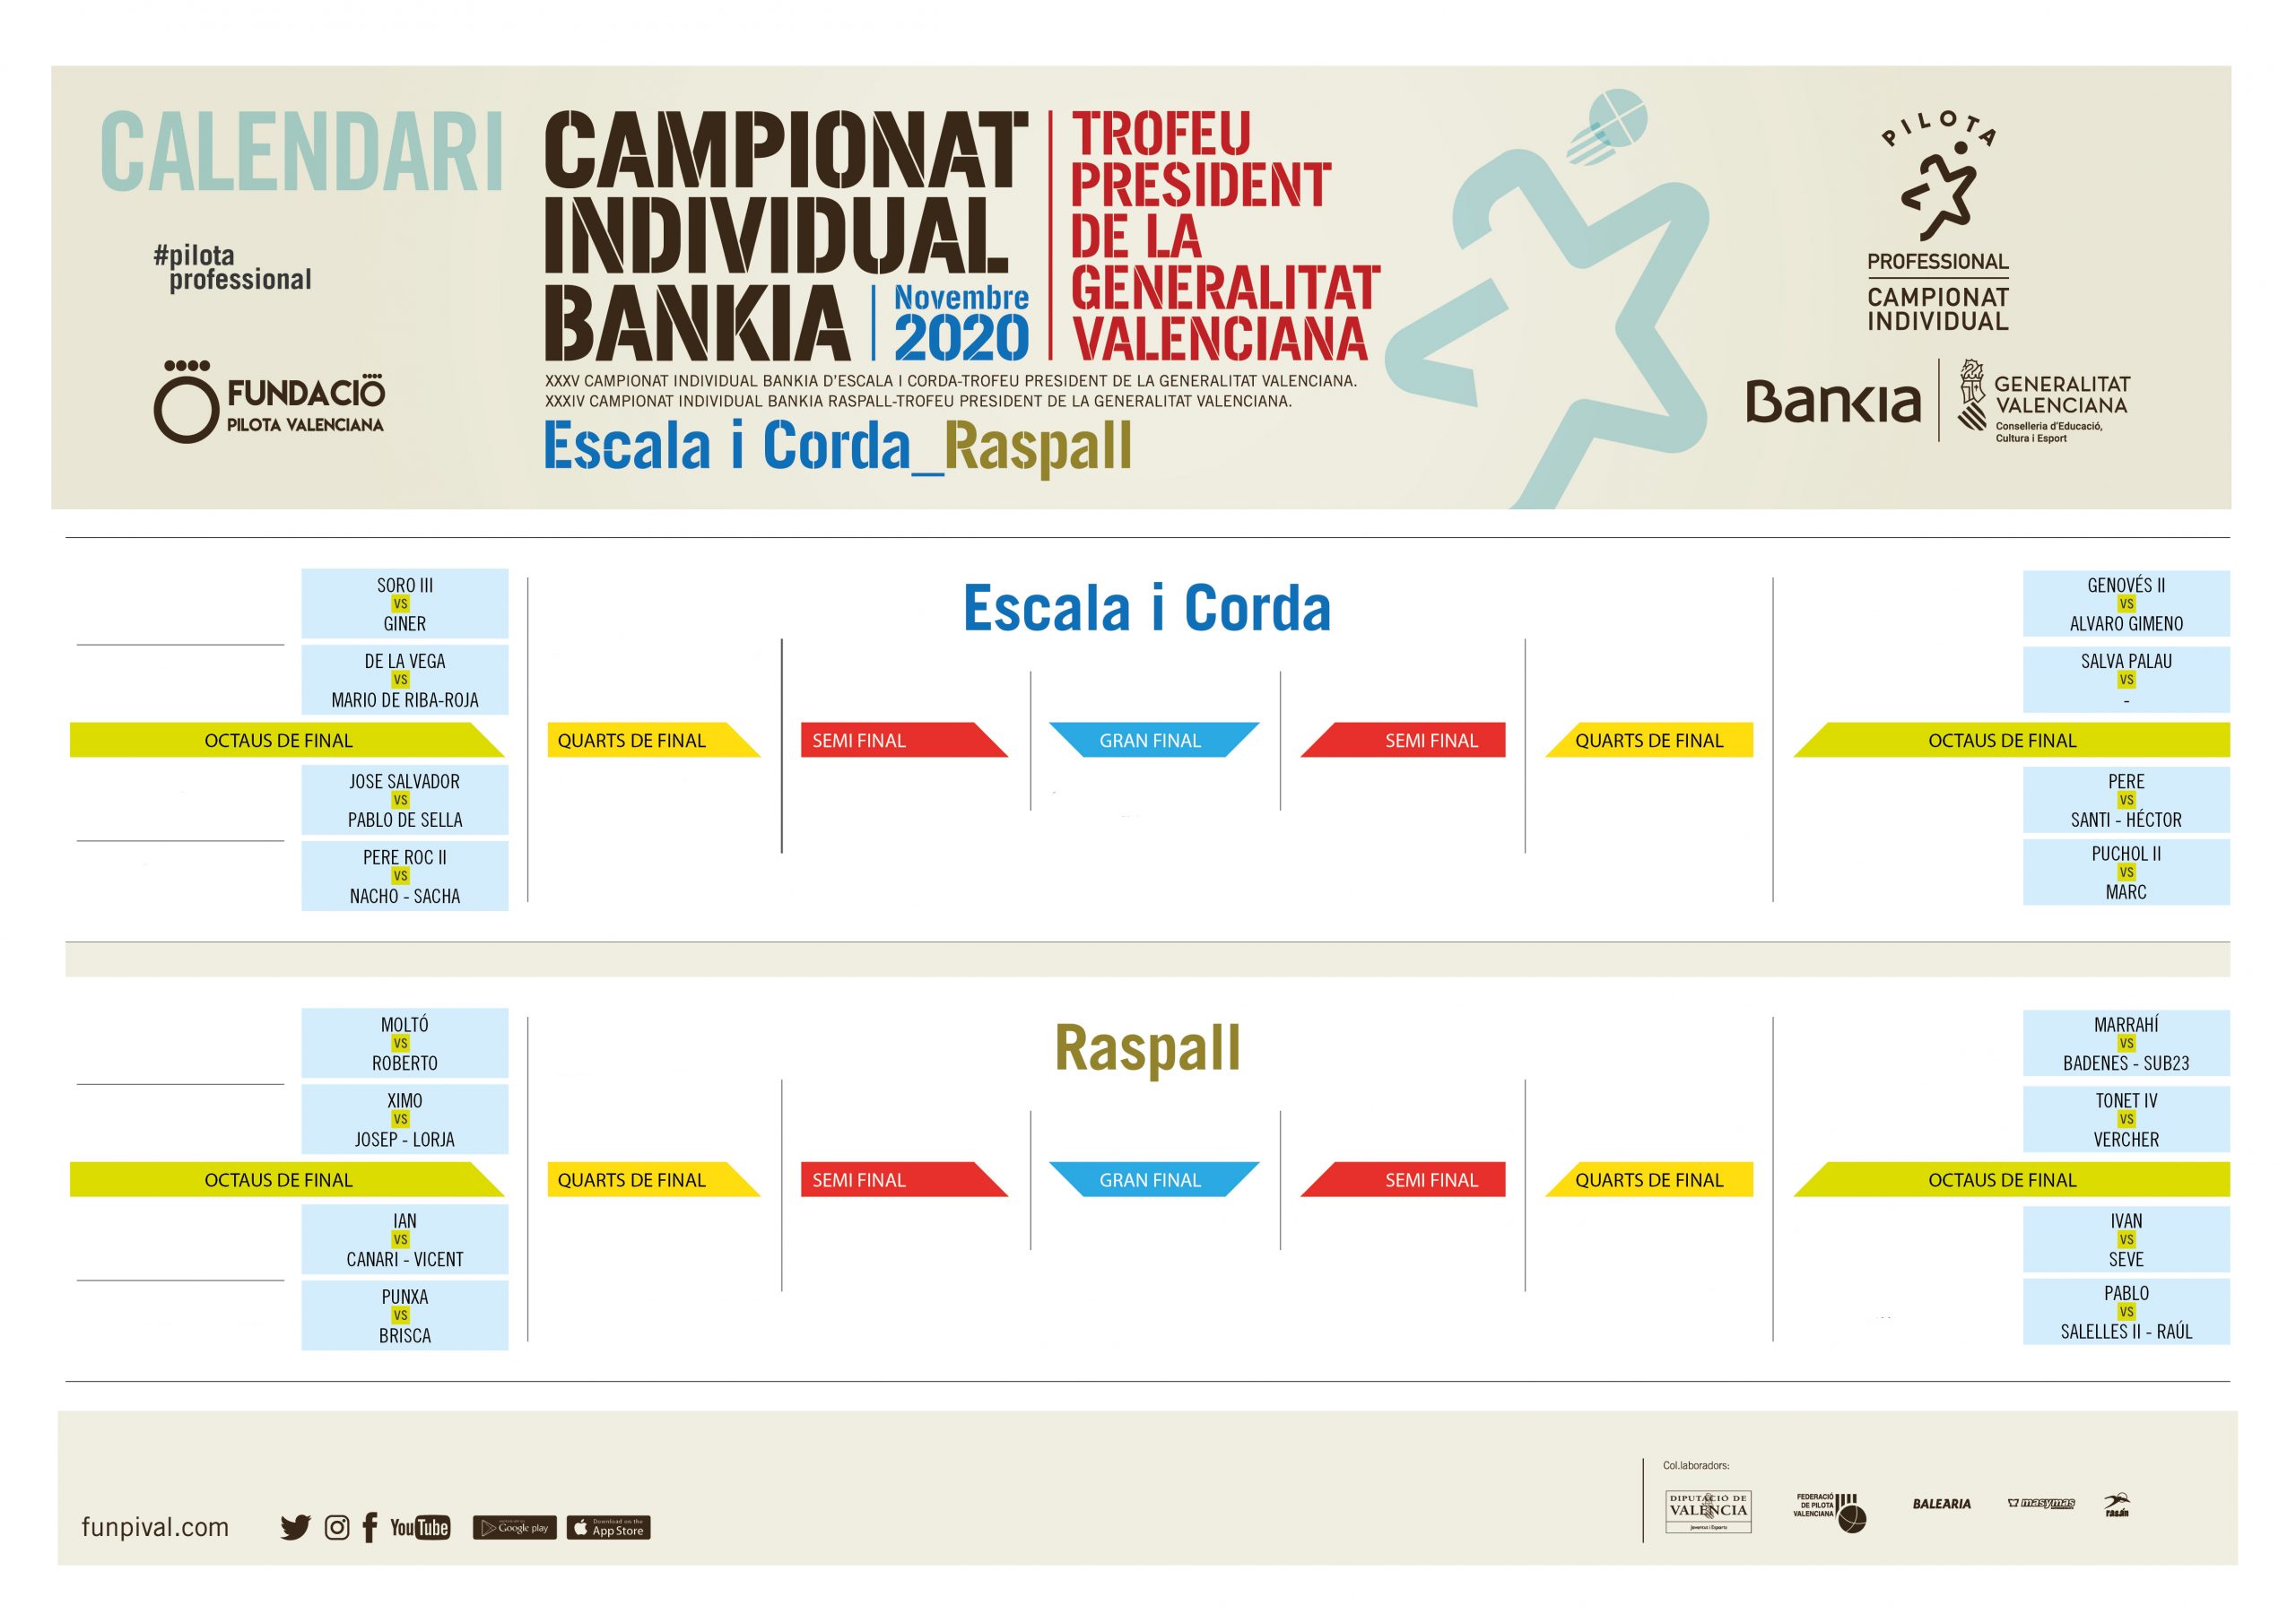 XXXV Campionat Individual Bankia d'Escala i Corda - Trofeu President de la Generalitat Valenciana